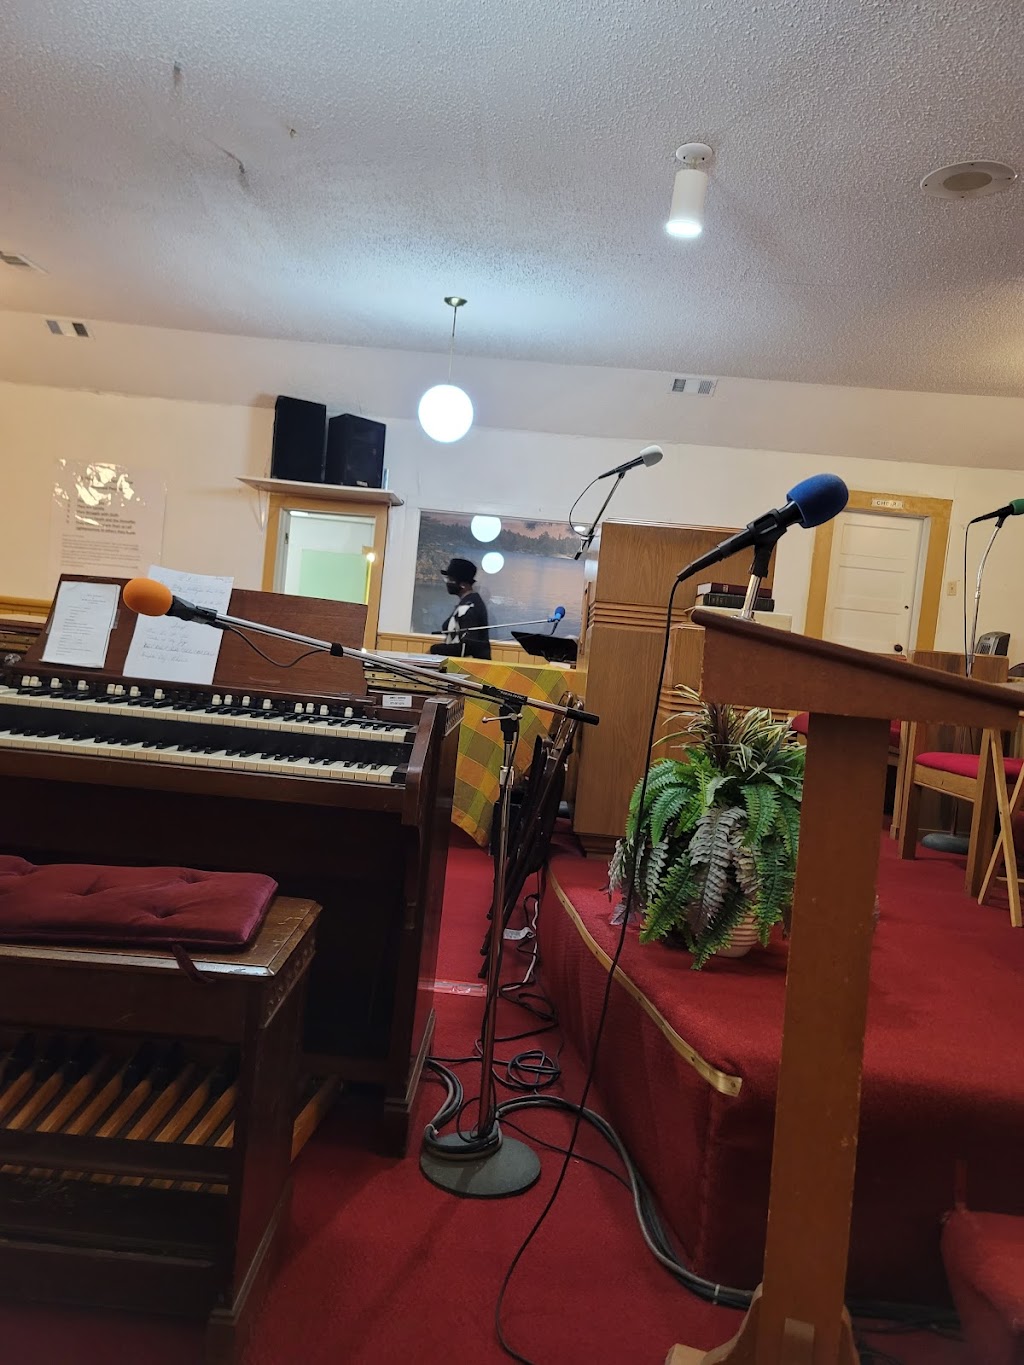 Mt Arie Baptist Church | 300 N Shannon St, Kaufman, TX 75142, USA | Phone: (972) 932-2581